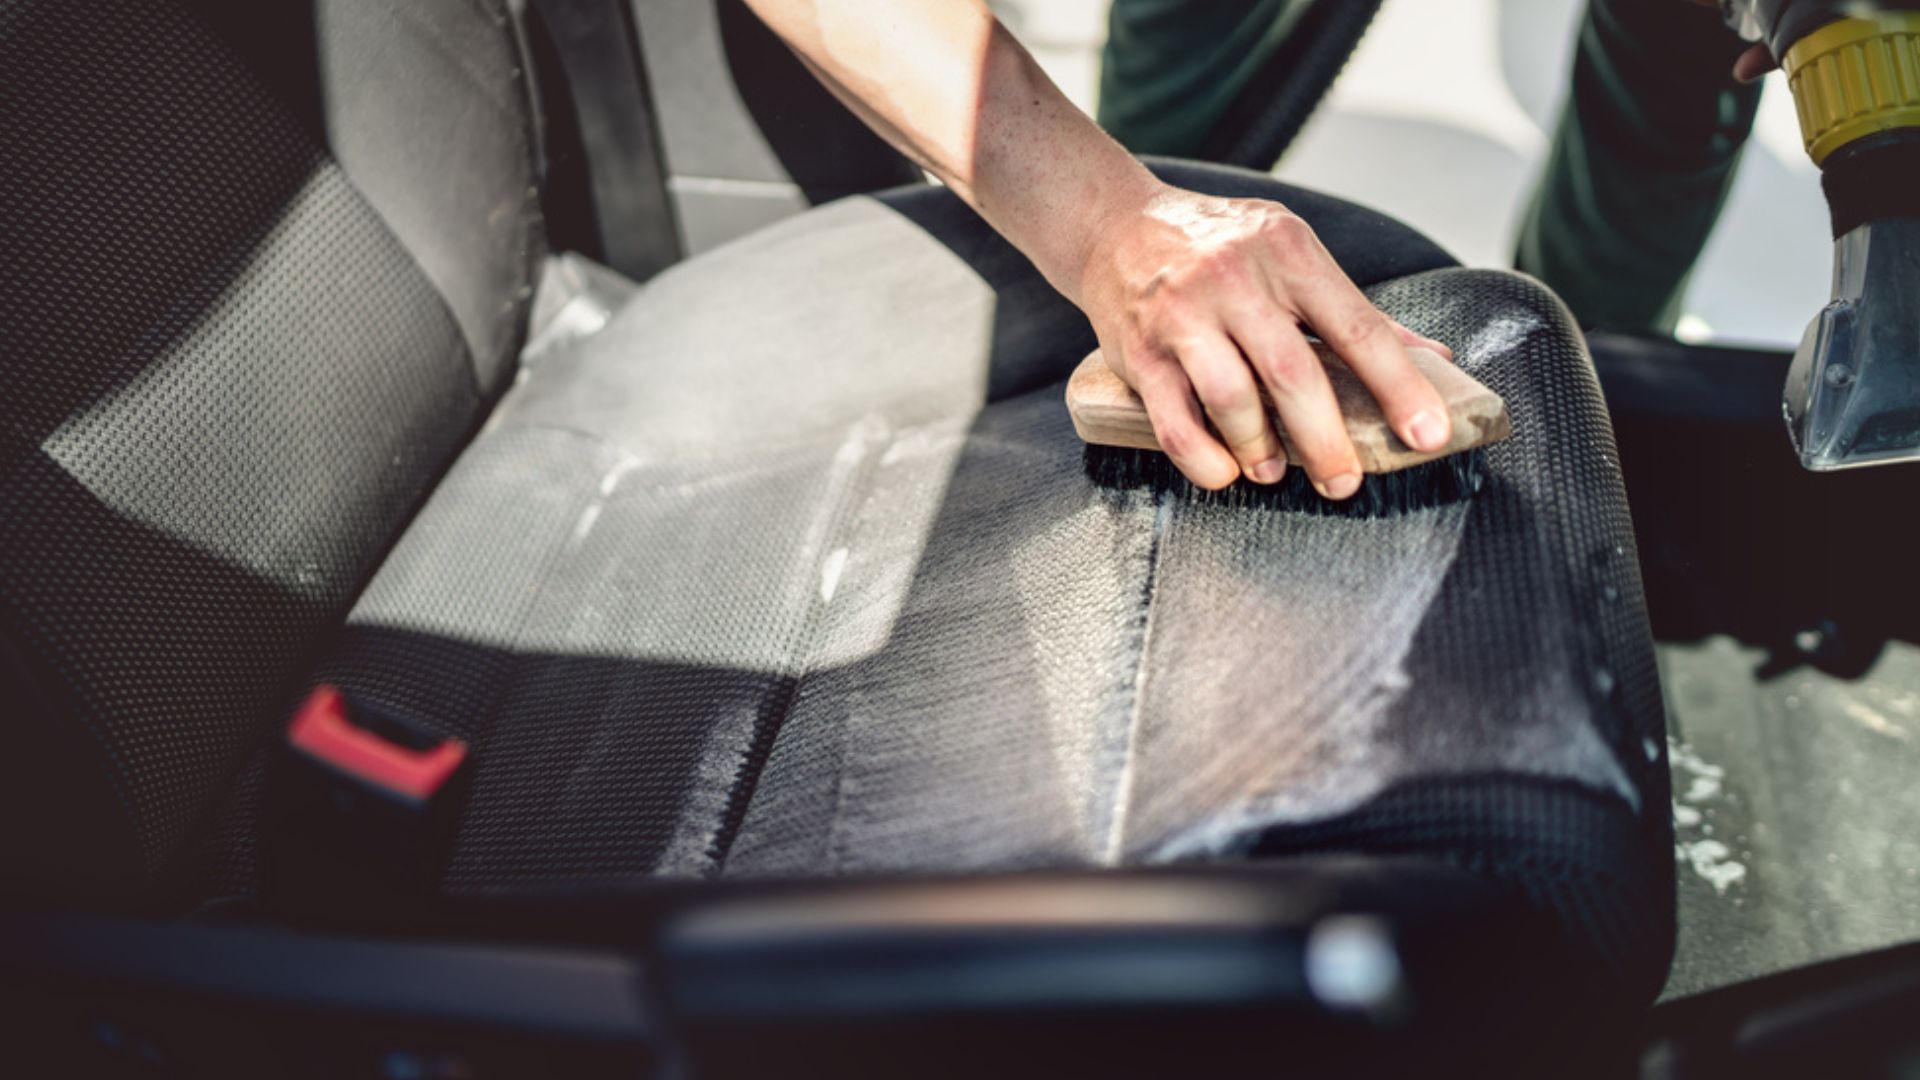 Car Leather Repair Glue Auto Seat Maintenance Leather Care Liquid